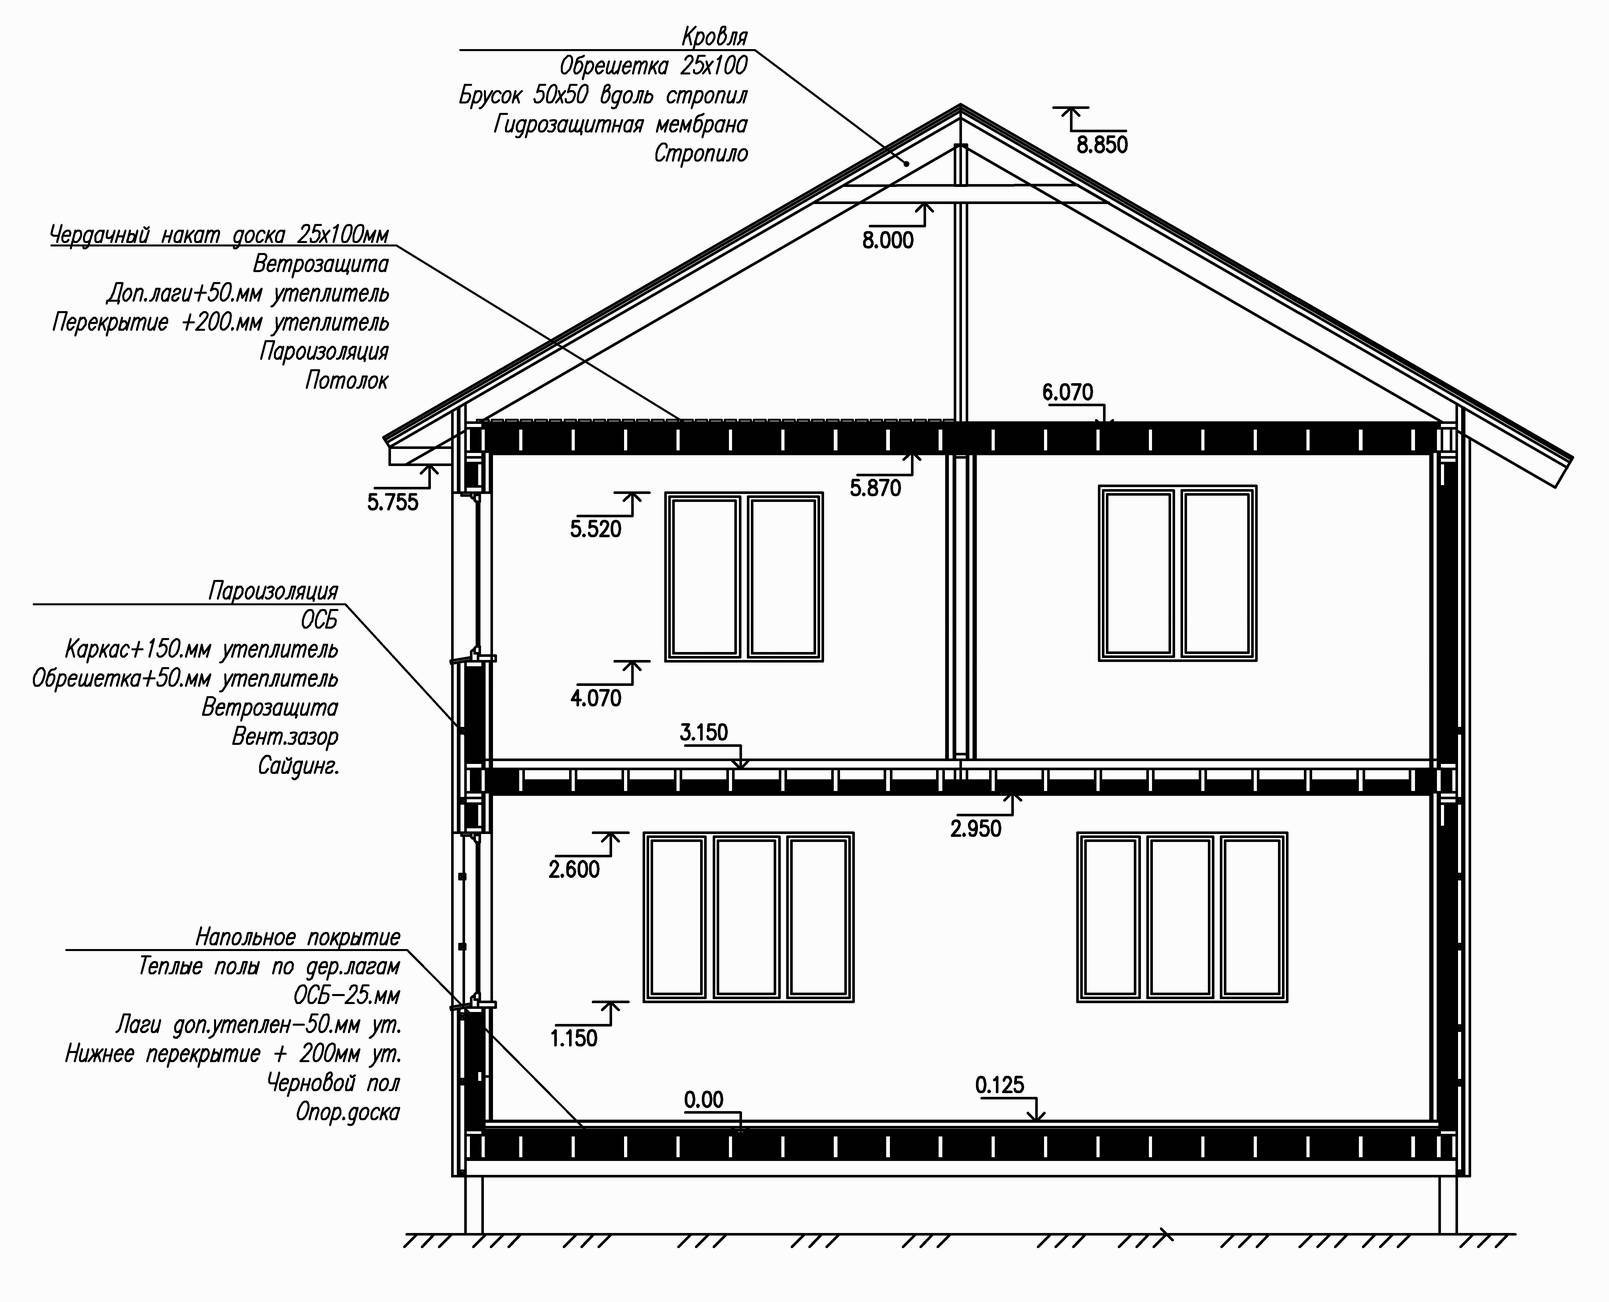 Каркасный дом с односкатной крышей своими руками: пошаговый инструктаж